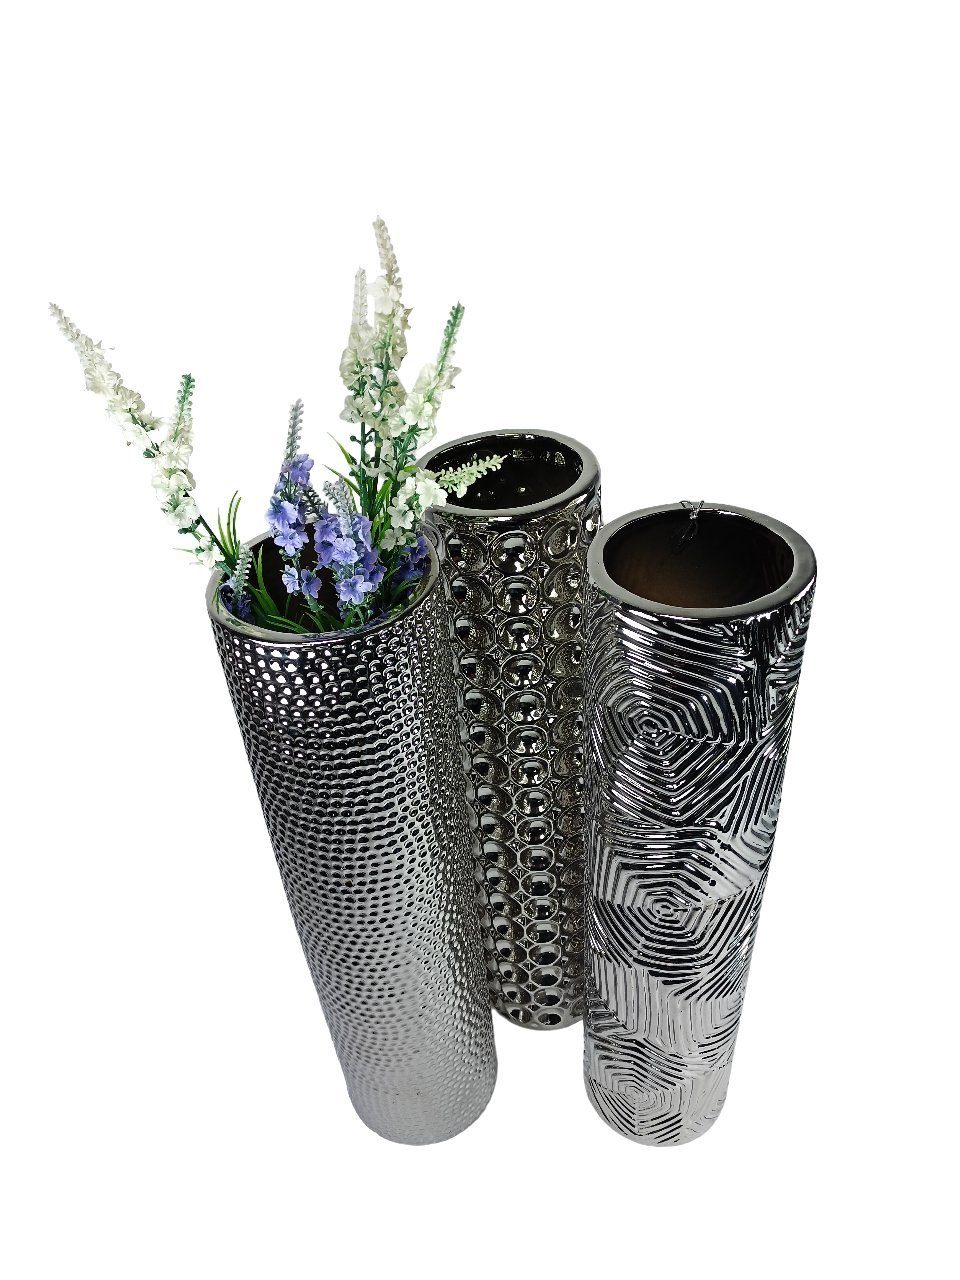 Silber Blumenvase GlasArt Wohnzimmer Dekovase 50x12cm Deko-Vase edel Keramik Schöne